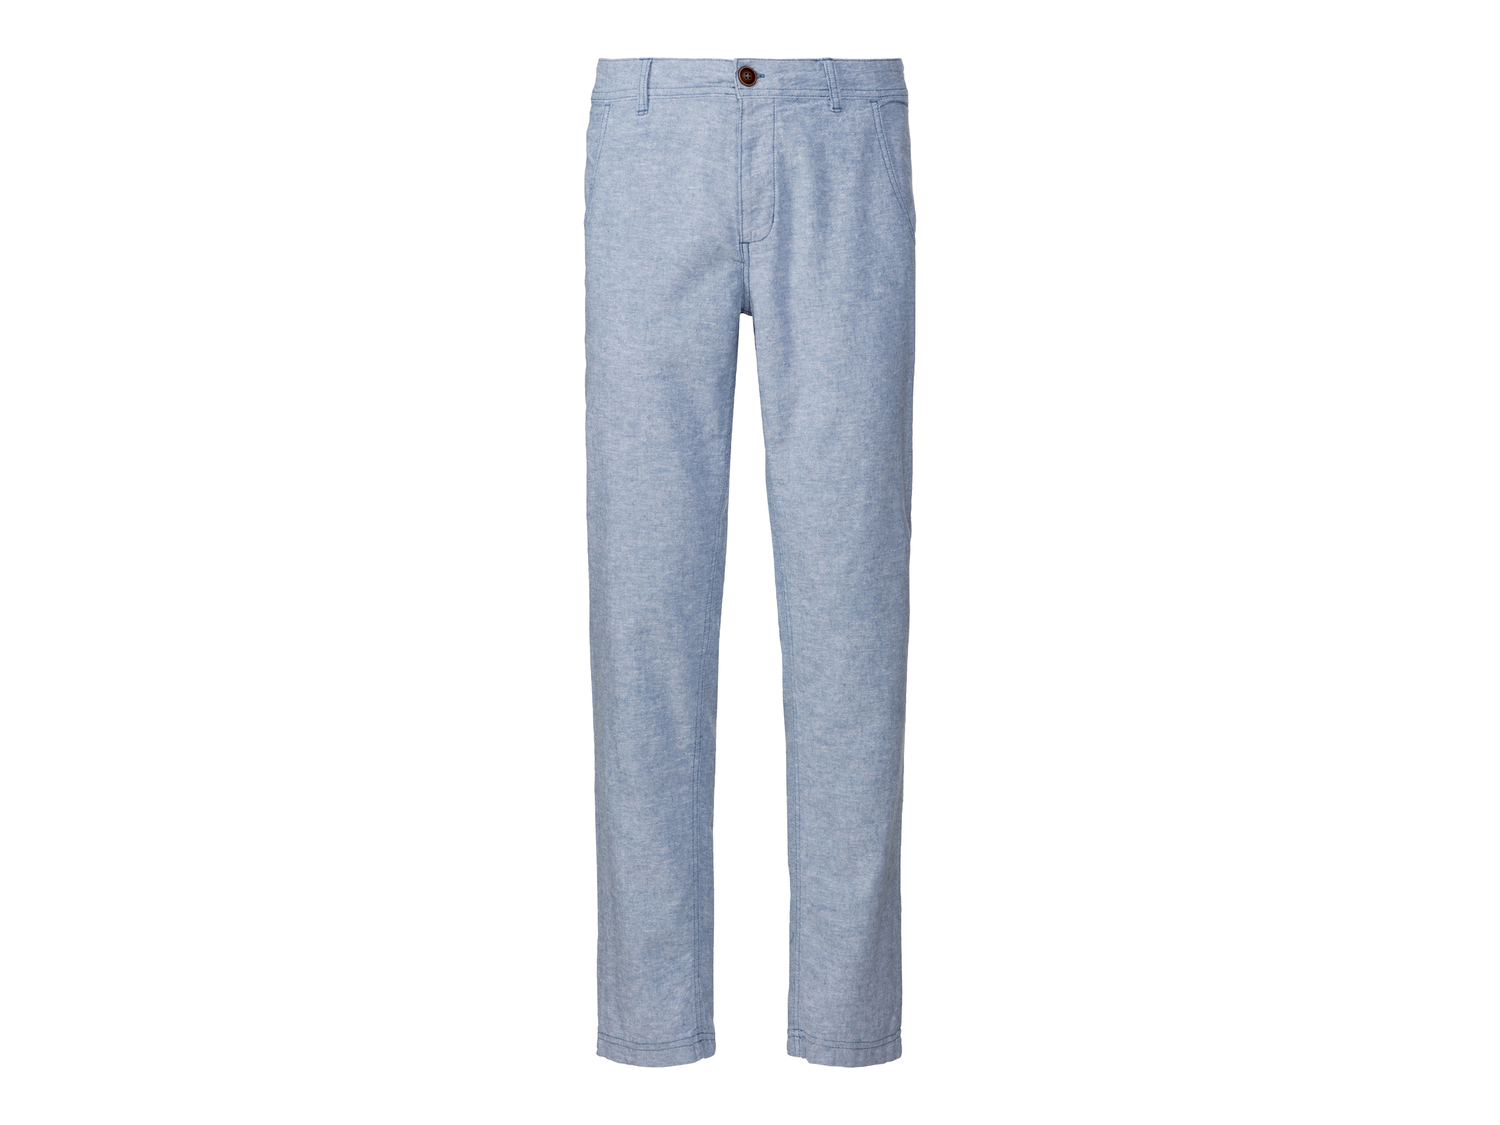 Pantaloni in lino da uomo Livergy, prezzo 9.99 &#8364; 
Misure: 46-54
Taglie ...